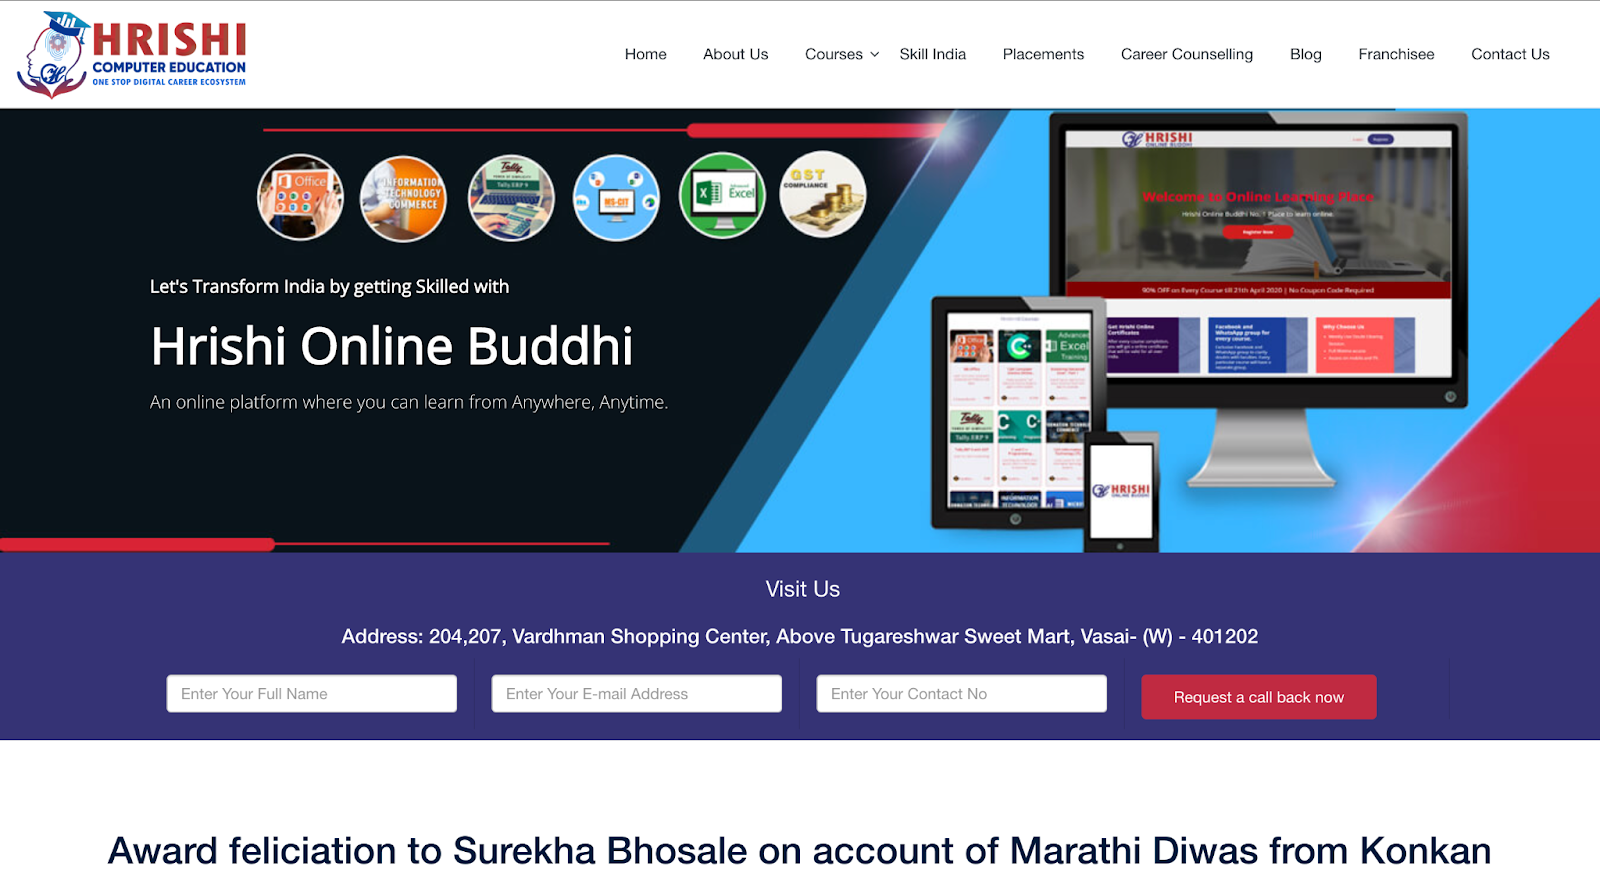 8 Best Digital Marketing Institutes in Vasai Virar